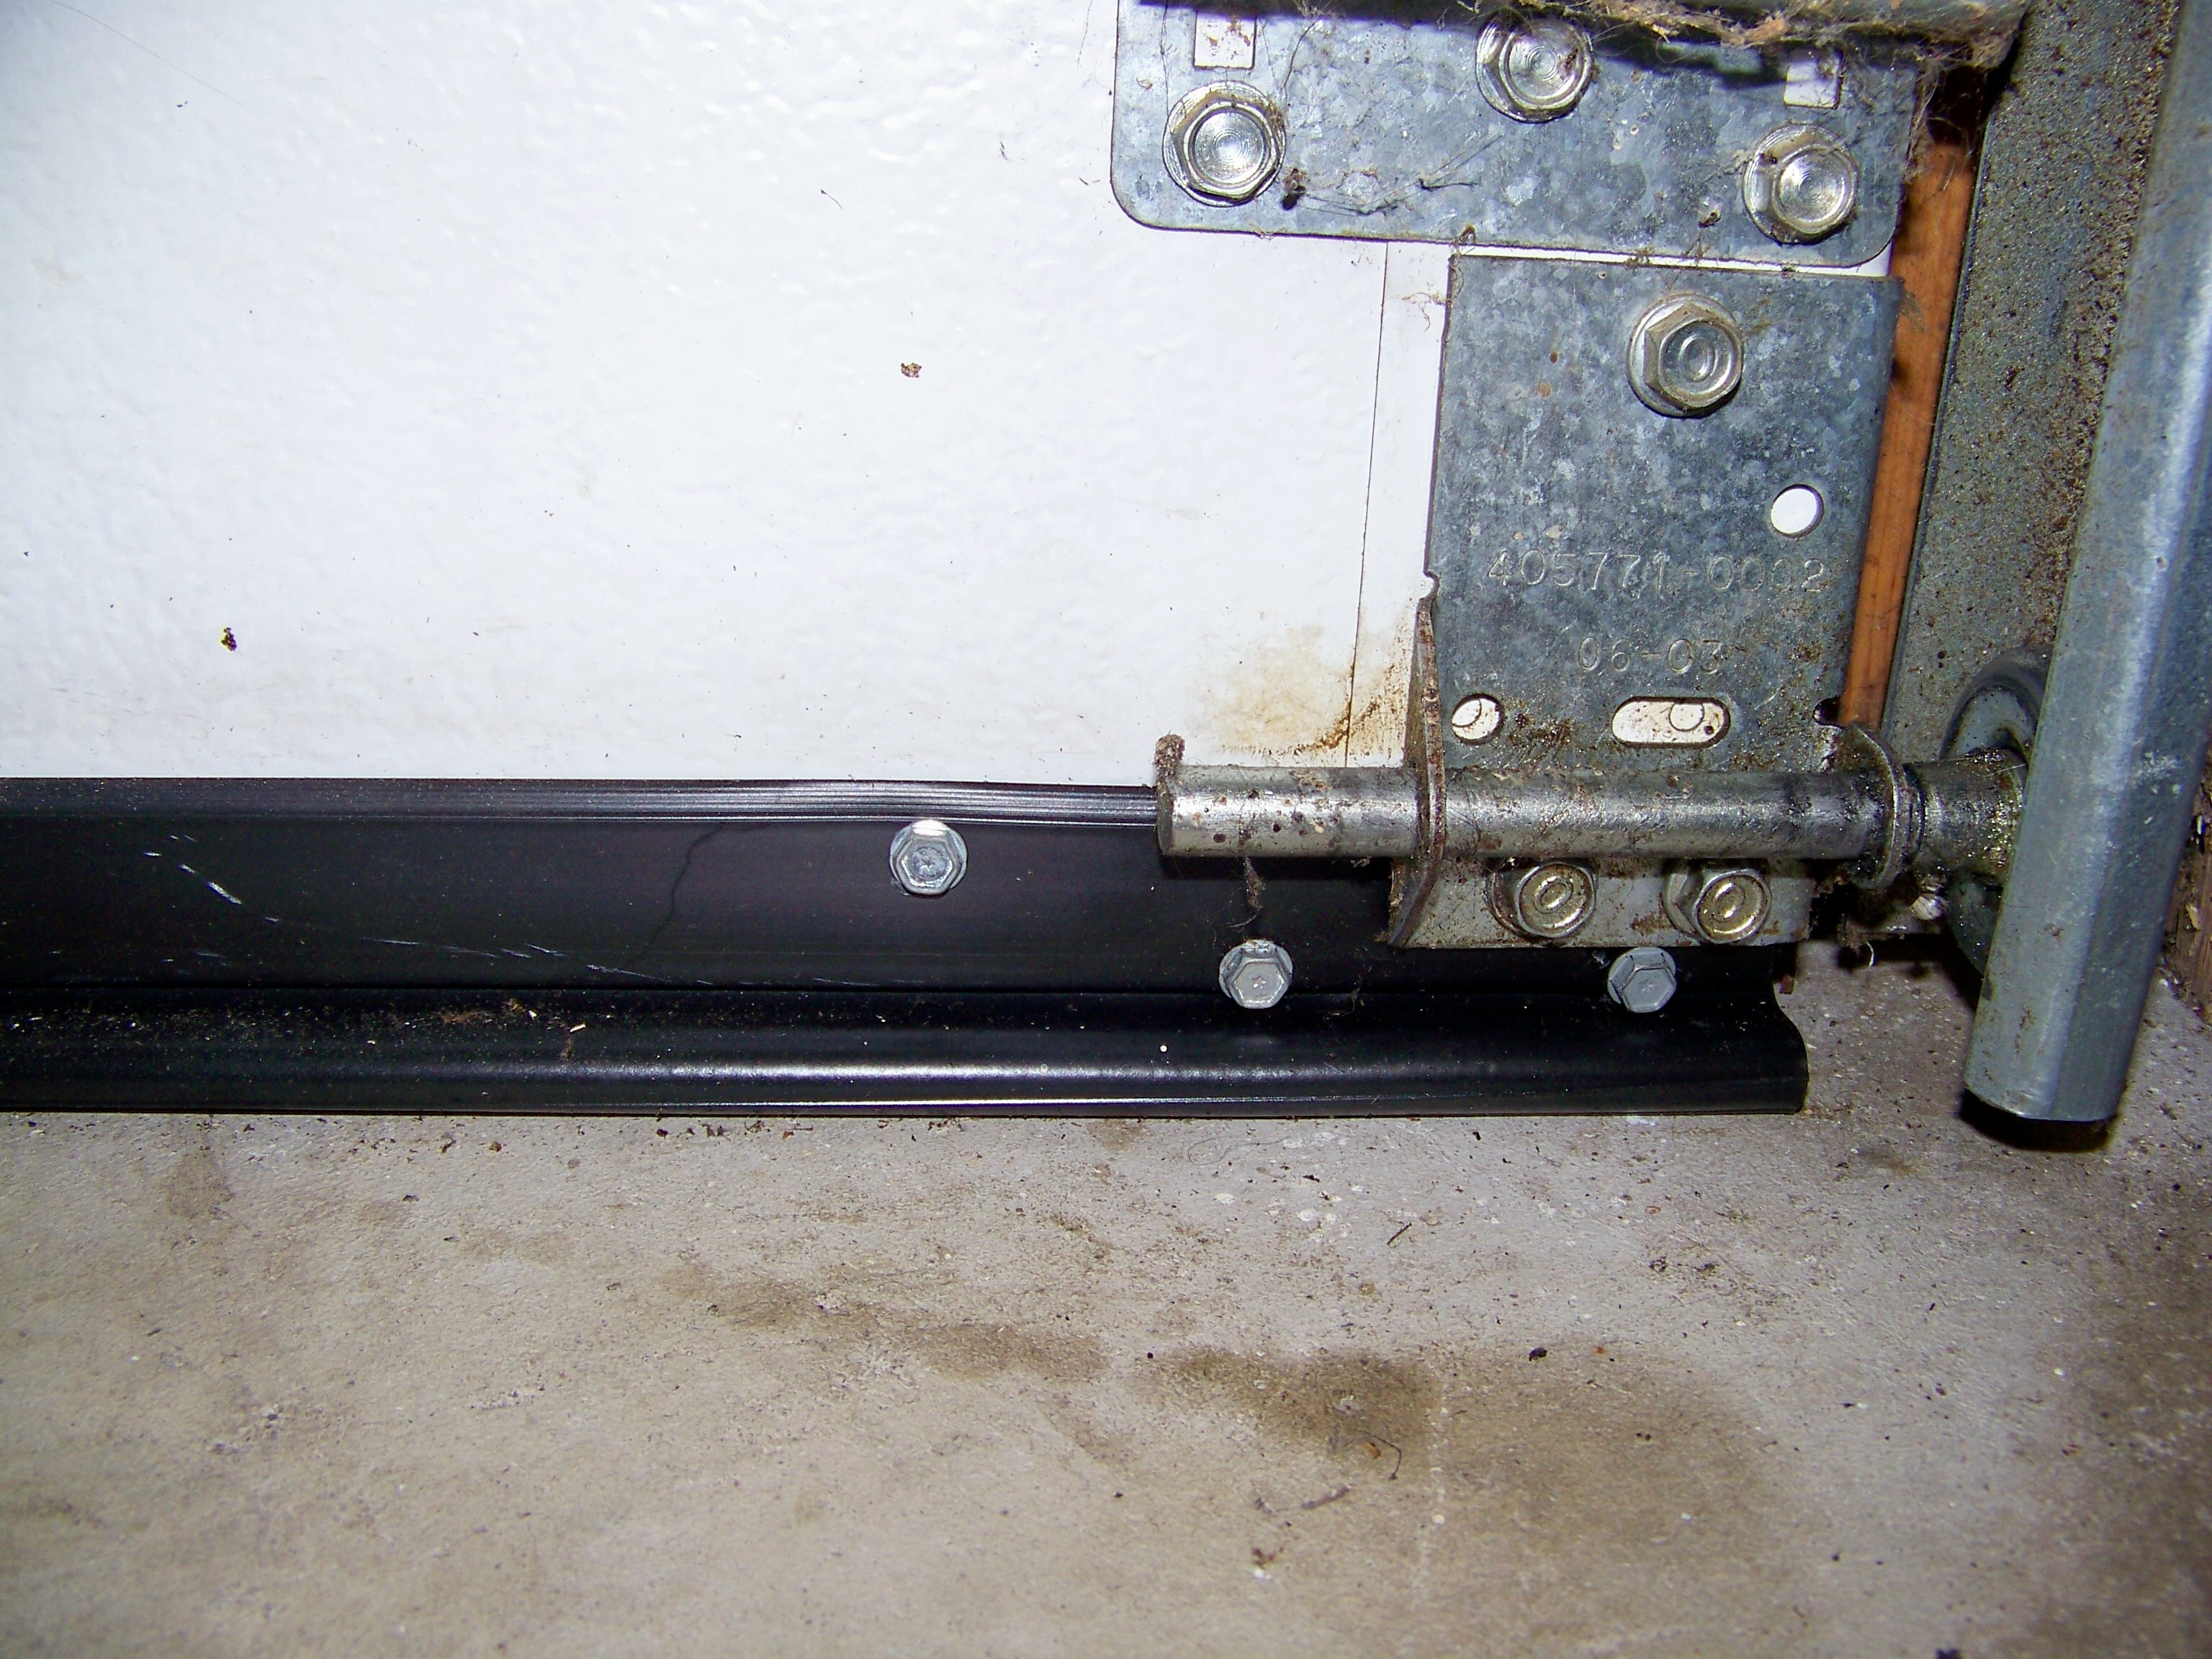 Installing Garage Door Bottom Seal Kits, How To Replace Garage Door Bottom Seal